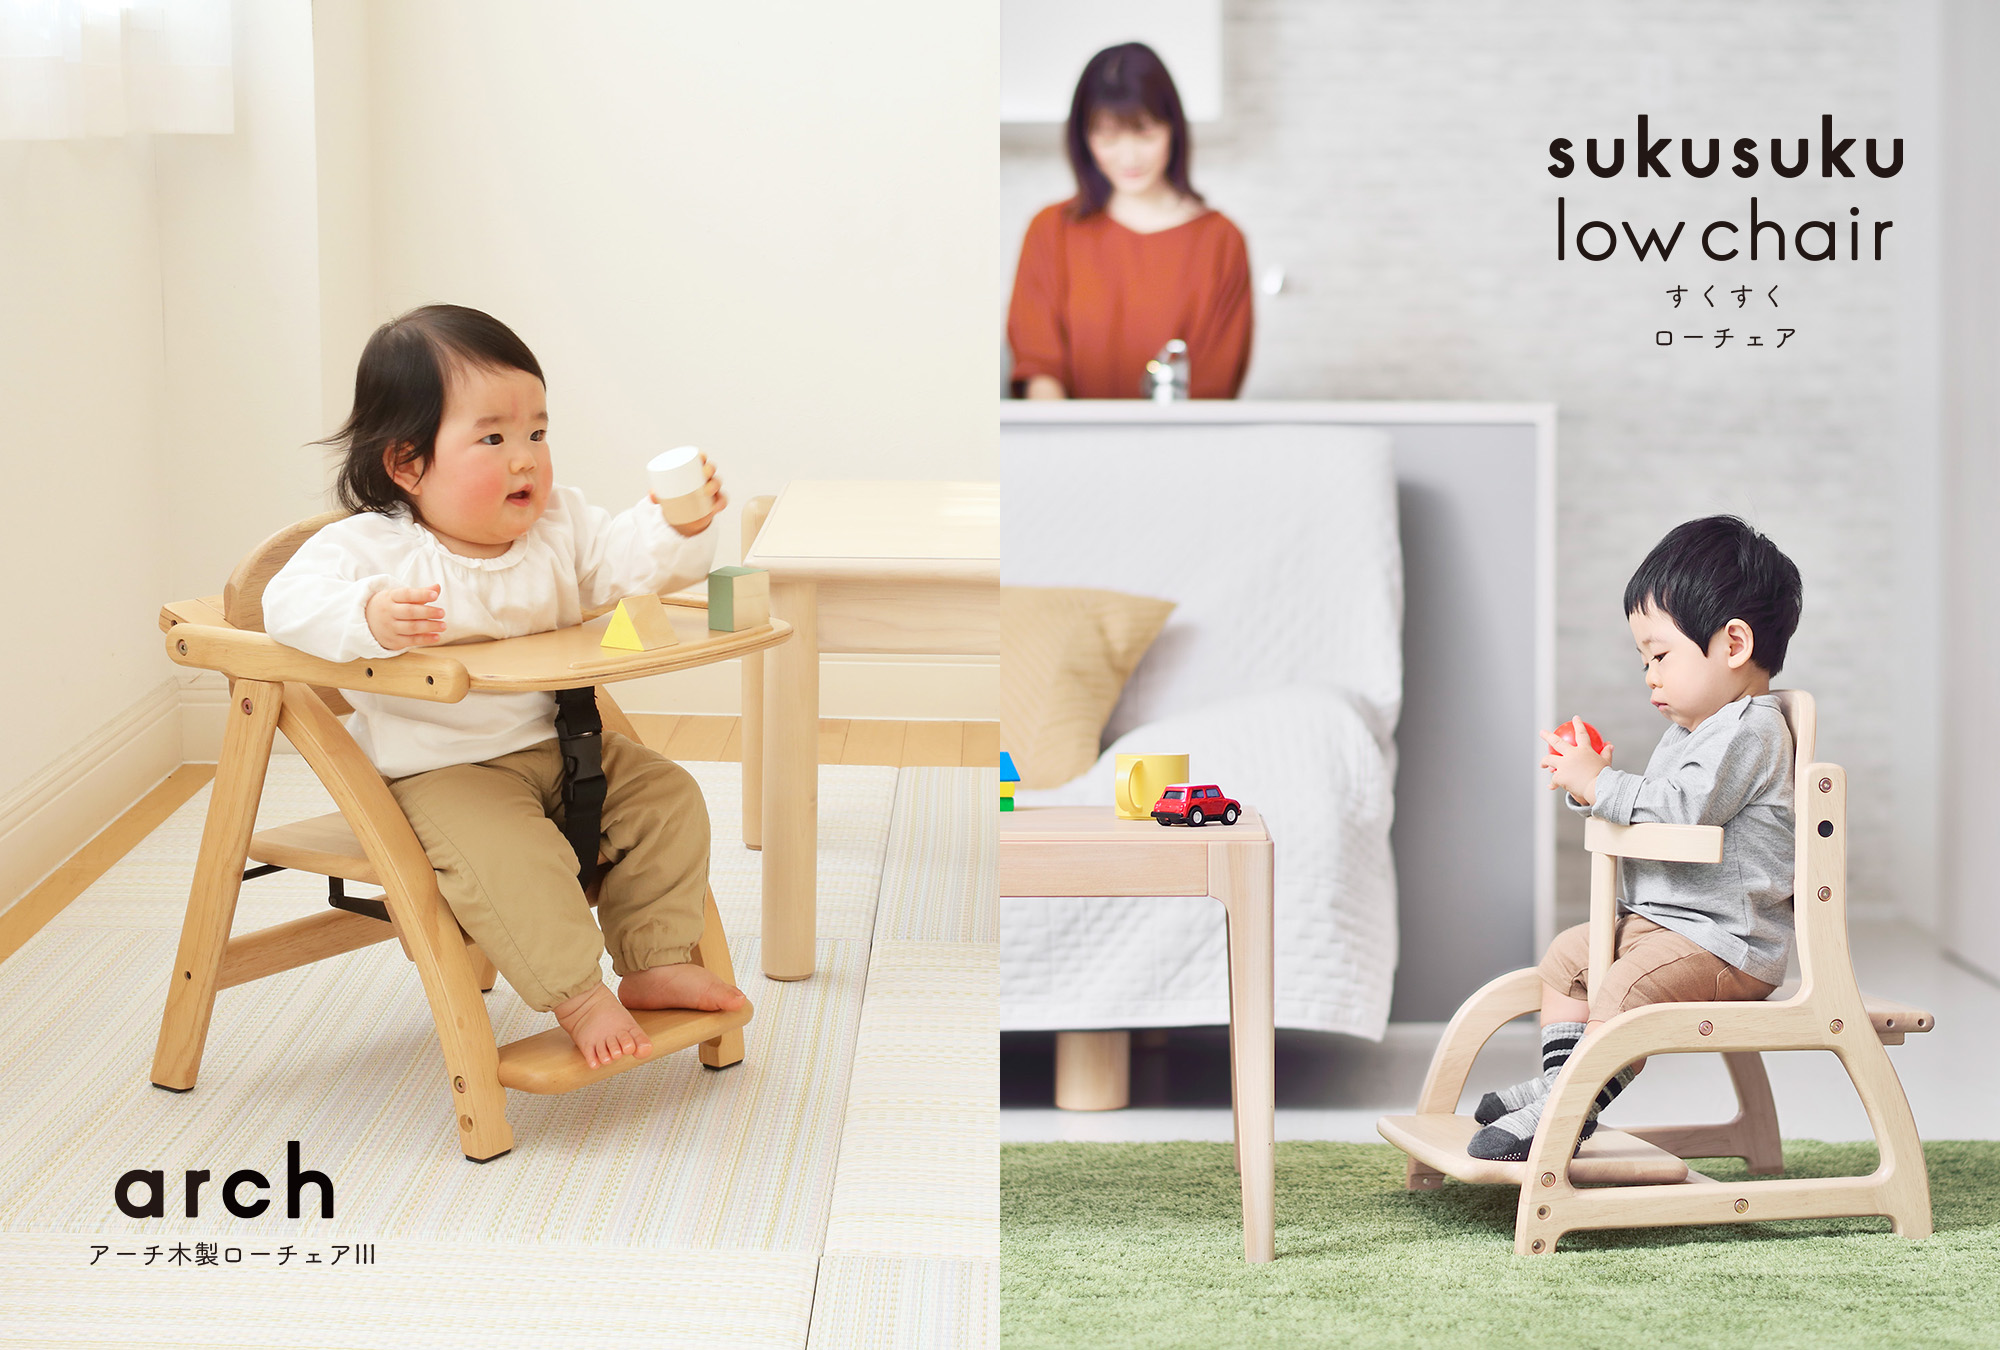 すくすくローチェアII ナチュラル ベビーチェア チェア すくすくプラス ロータイプ yamatoya 大和屋 離乳食 食事 椅子 キッズチェア  テーブル 床暮らし 木製